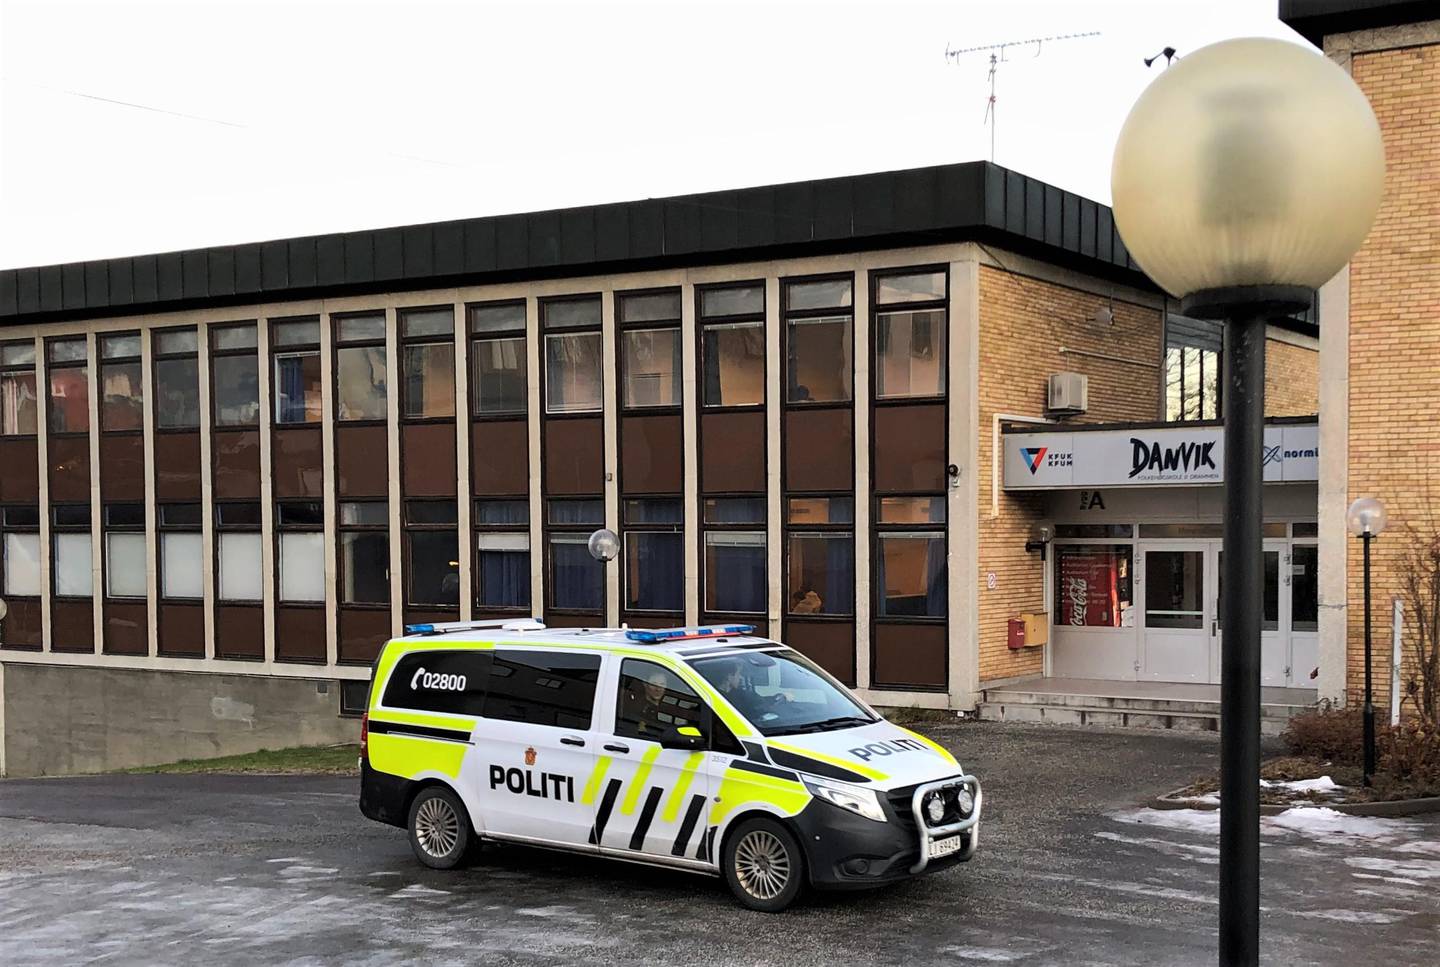 Politiet patruljerer utenfor Danvik Folkehøgskole, og kommer til å gjøre det helt til de kommer til bunns i etterforskningen.